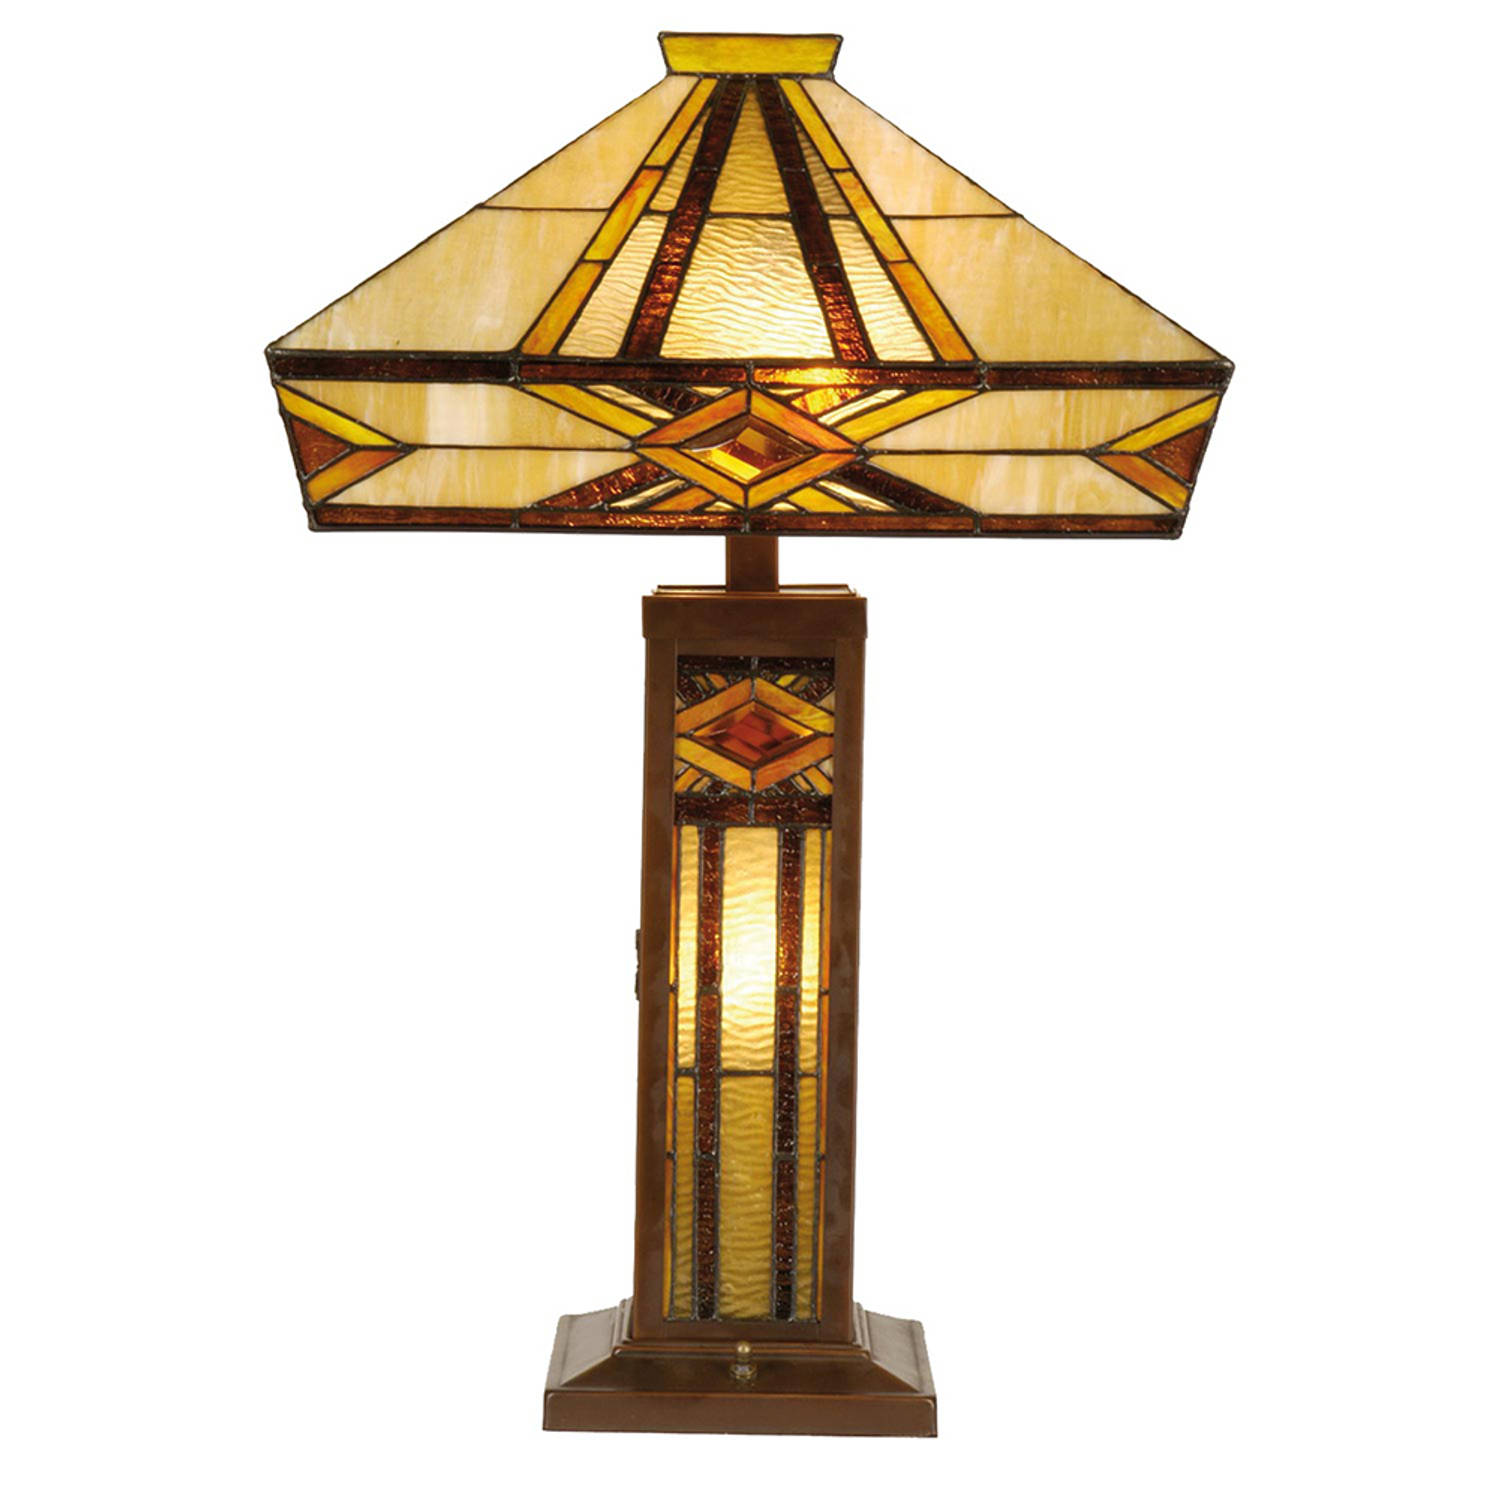 HAES deco Tiffany Tafellamp Beige Bruin 42x42x71 cm Fitting E27 Lamp max 2x60W Fitting E14 Lamp max 1x15W